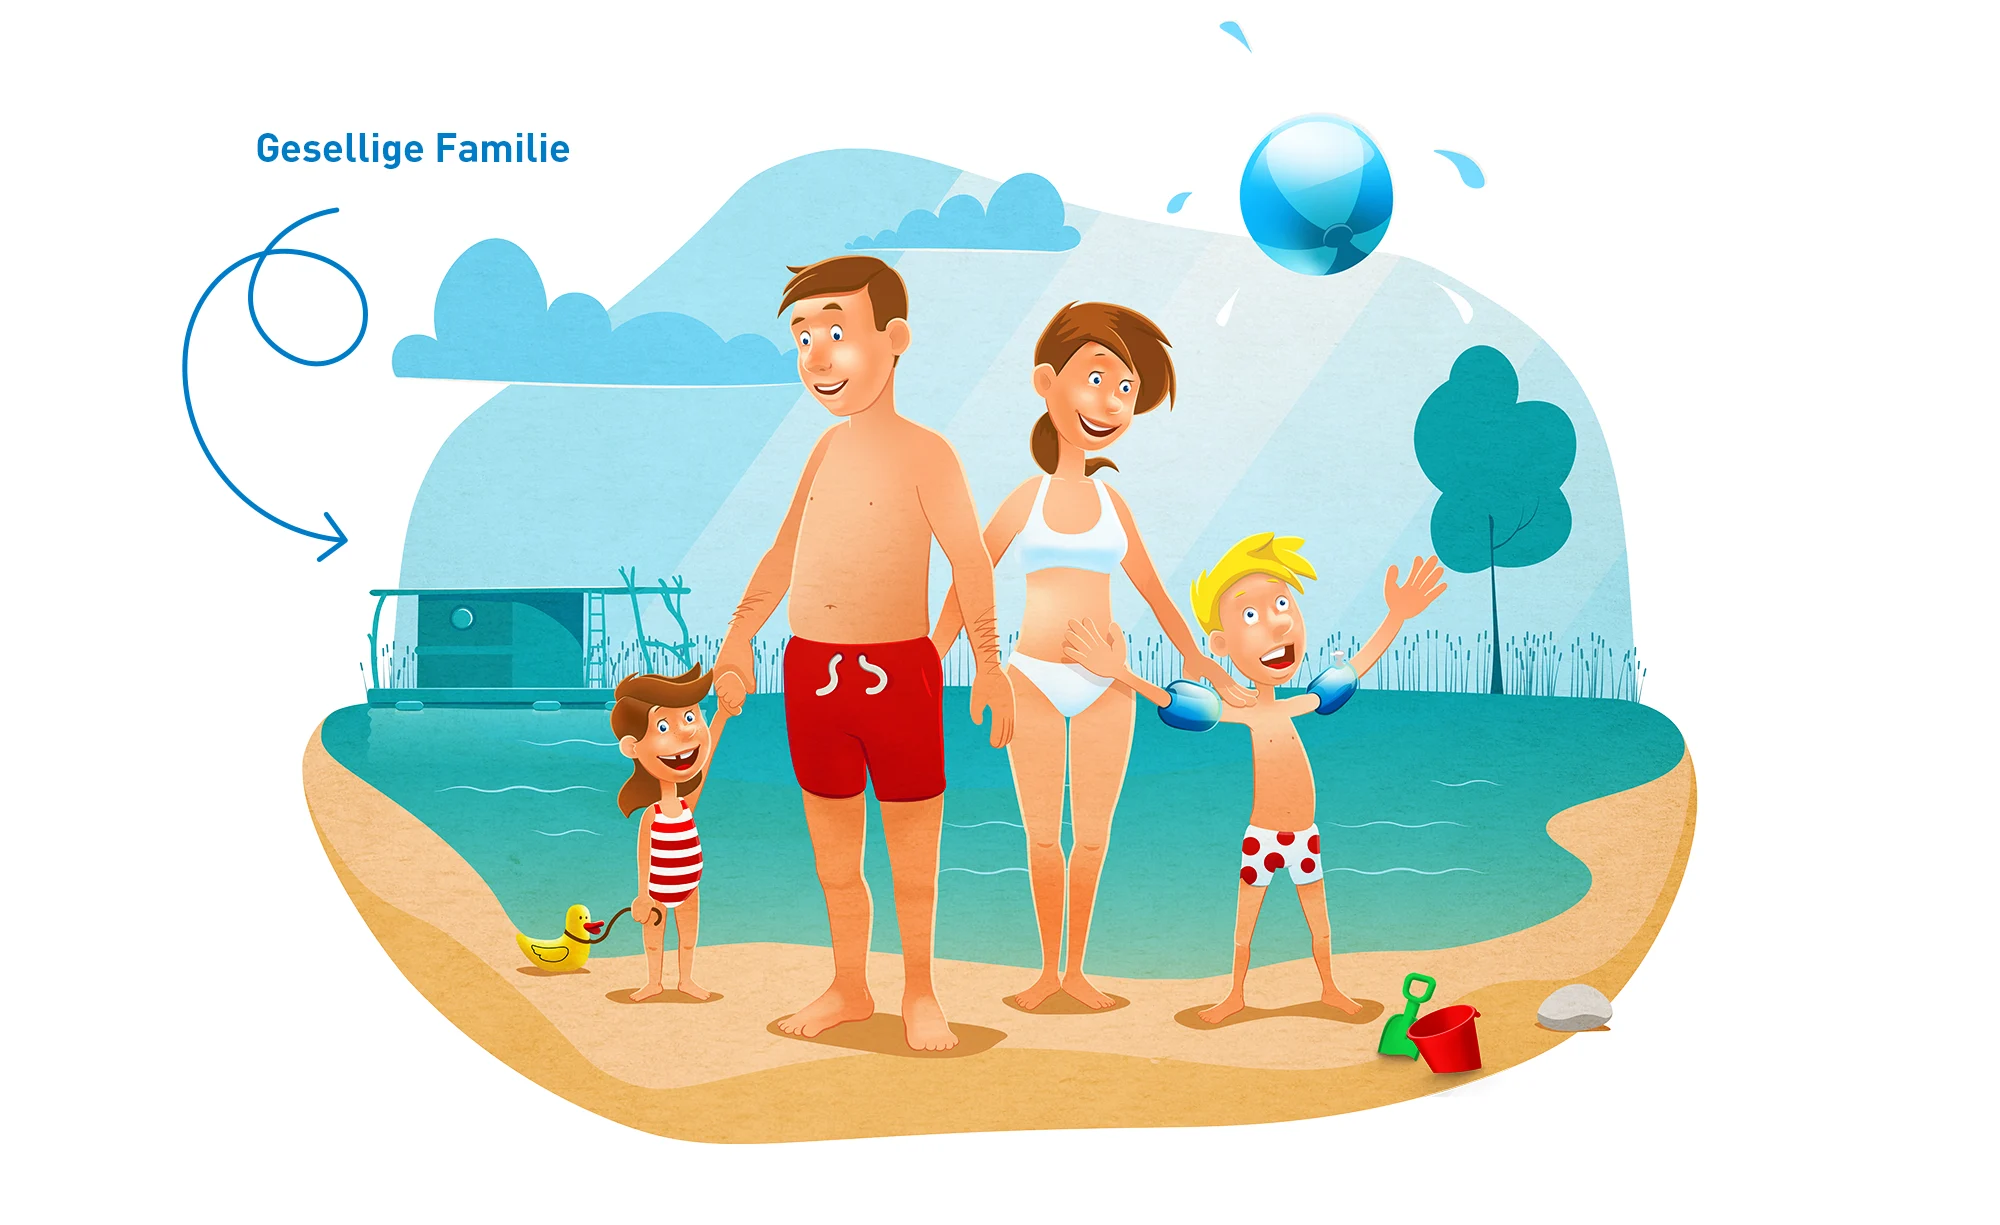 Illustration der touristischen Zielgruppe „Gesellige Familie“, welche überwiegend aus 3+ Personenhaushalten besteht